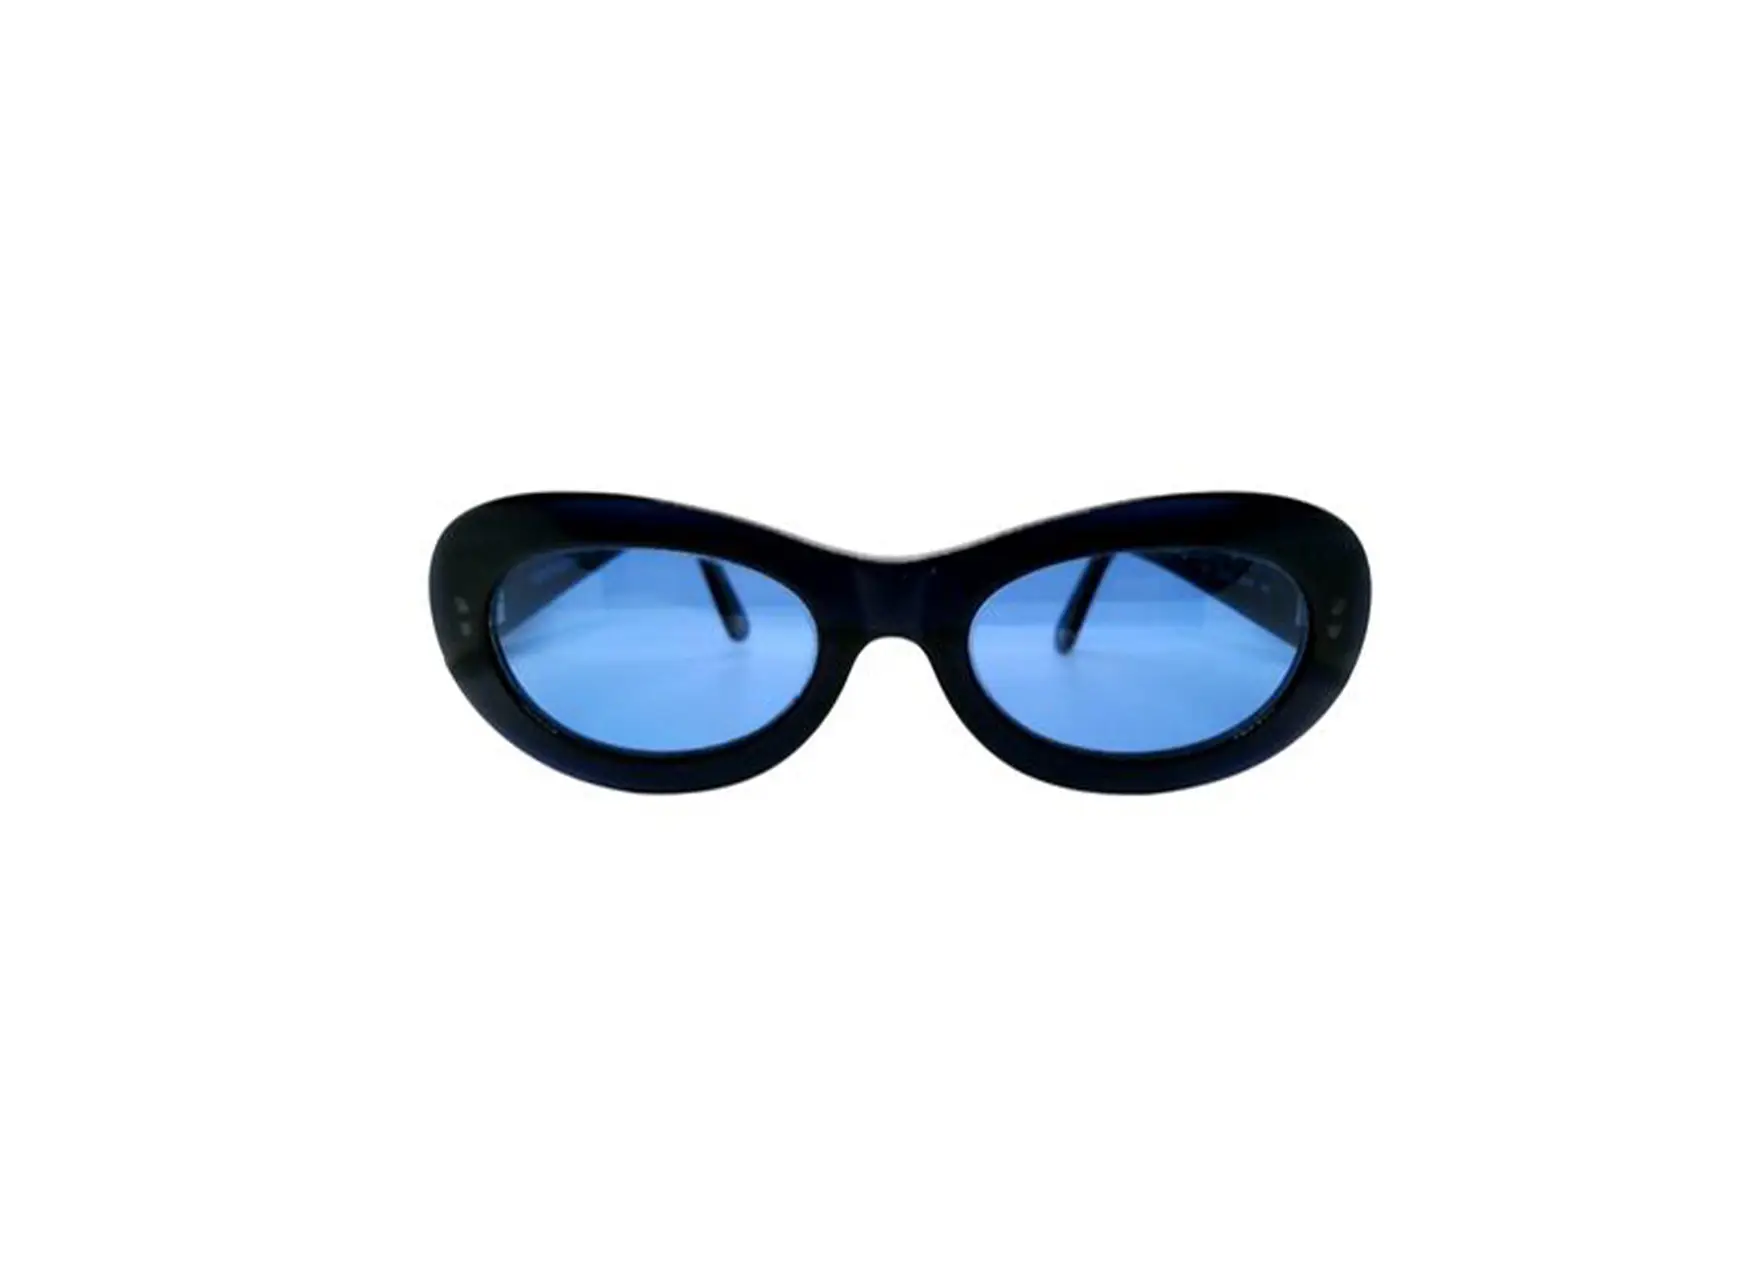 used-sunglasses-black-blue.jpg